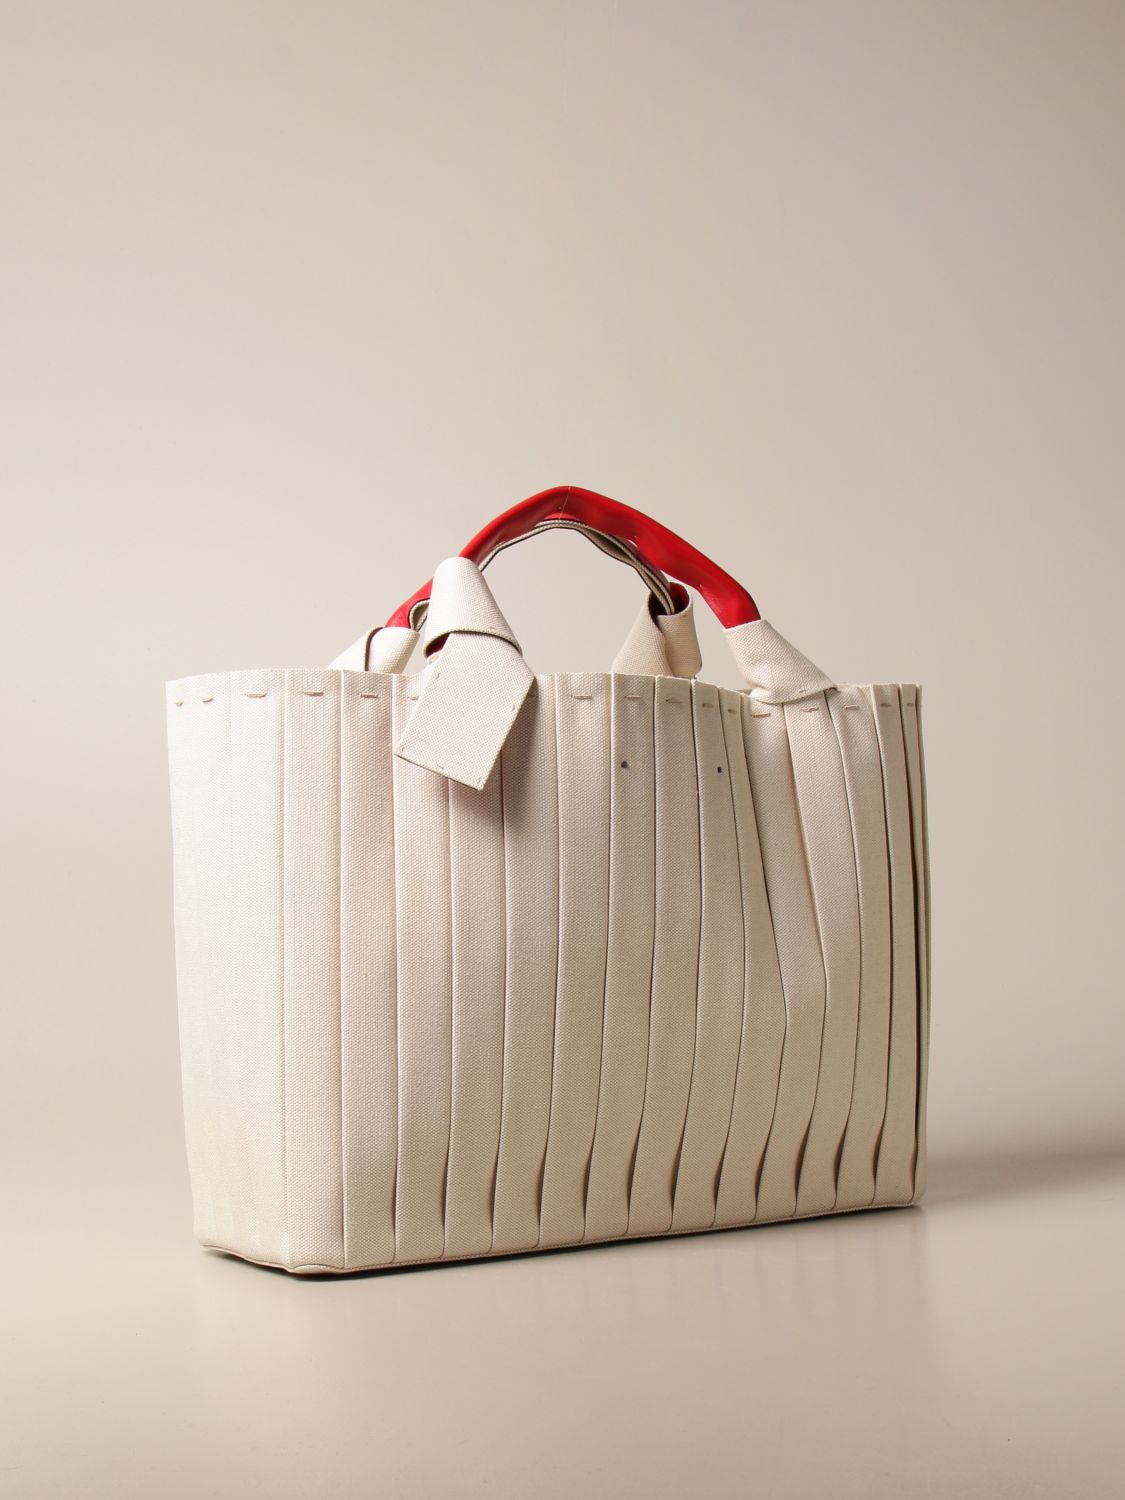 Valentino Garavani Small 05 Plisse Edition Atelier Tote Bag Natural, Tote